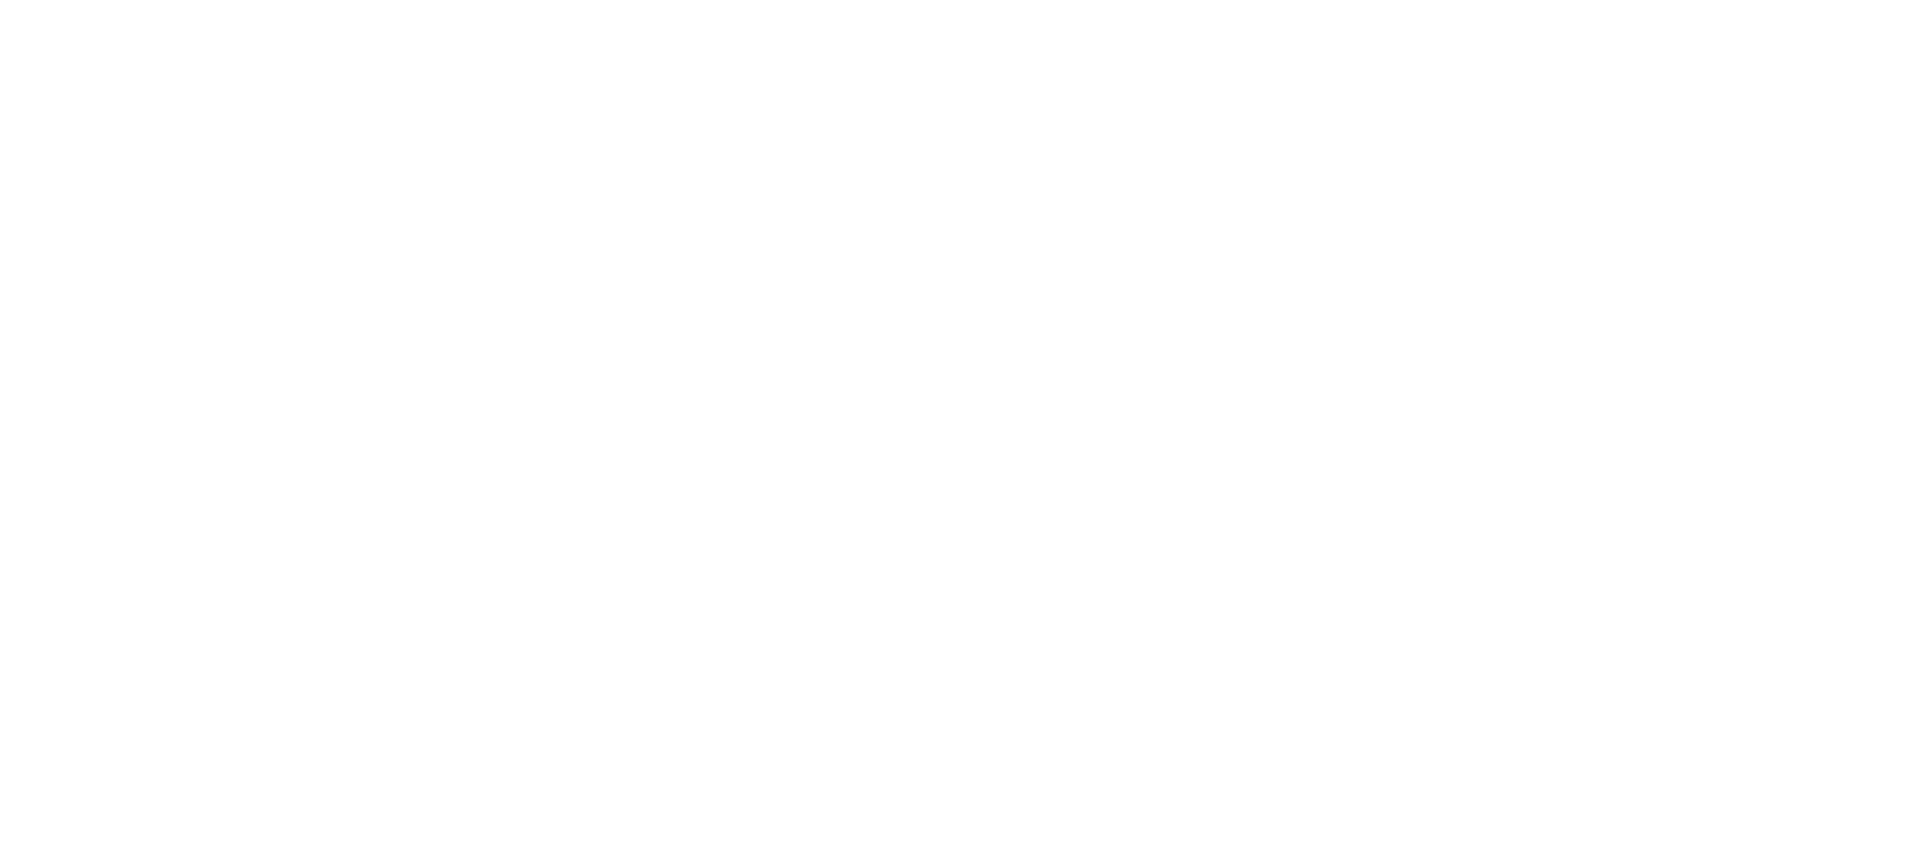 2023CDIE 中国数字化创新博览会